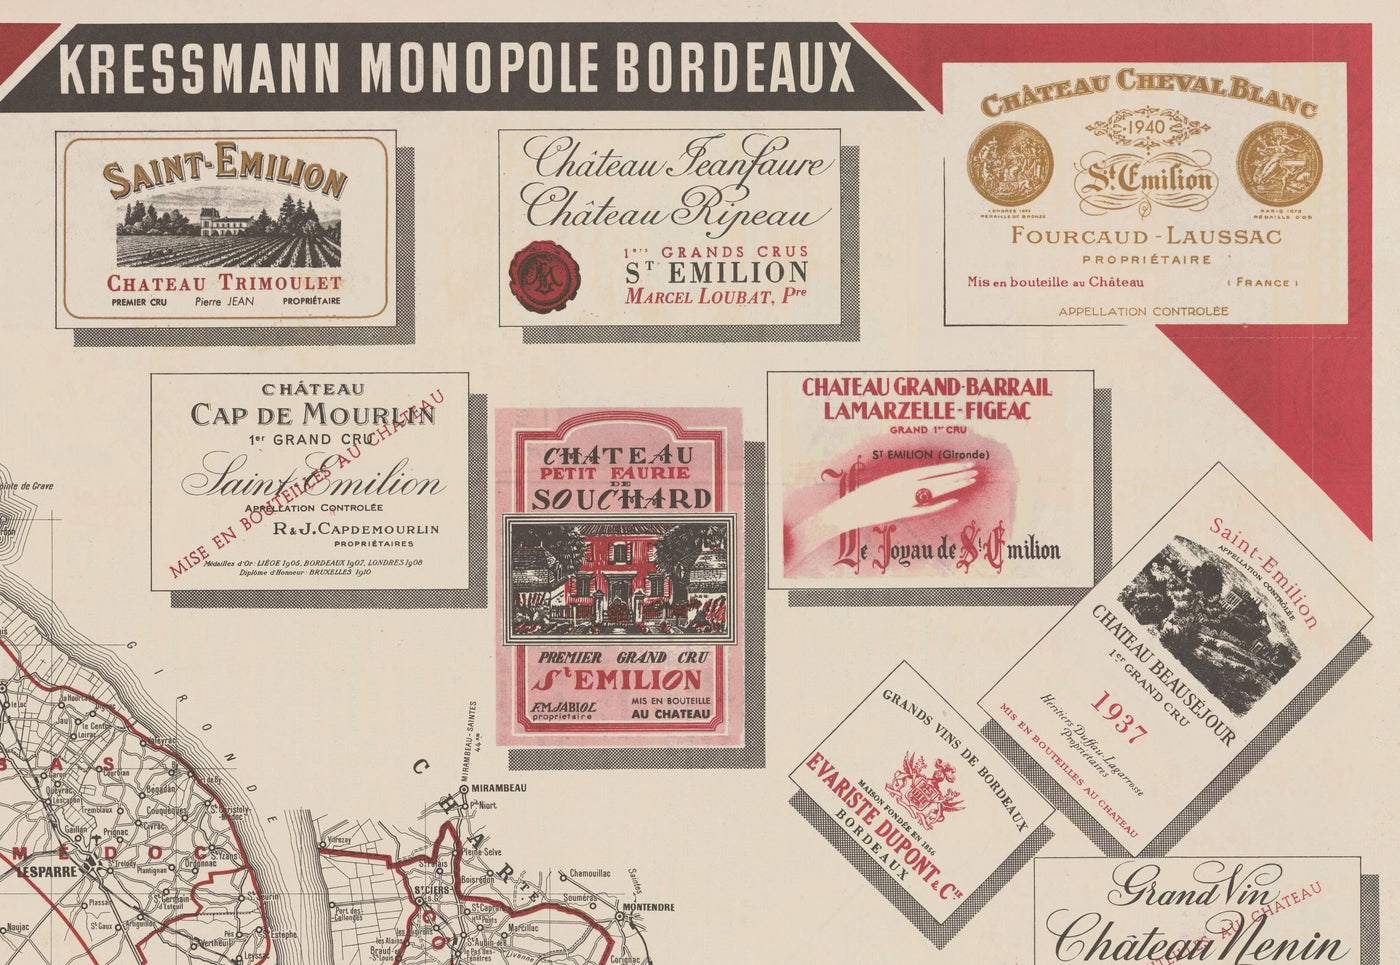 Mapa antiguo Mapa del vino de Burdeos en 1948 - Garona, Pessac, Blanquefort, Carbon-Blanc, Libourne